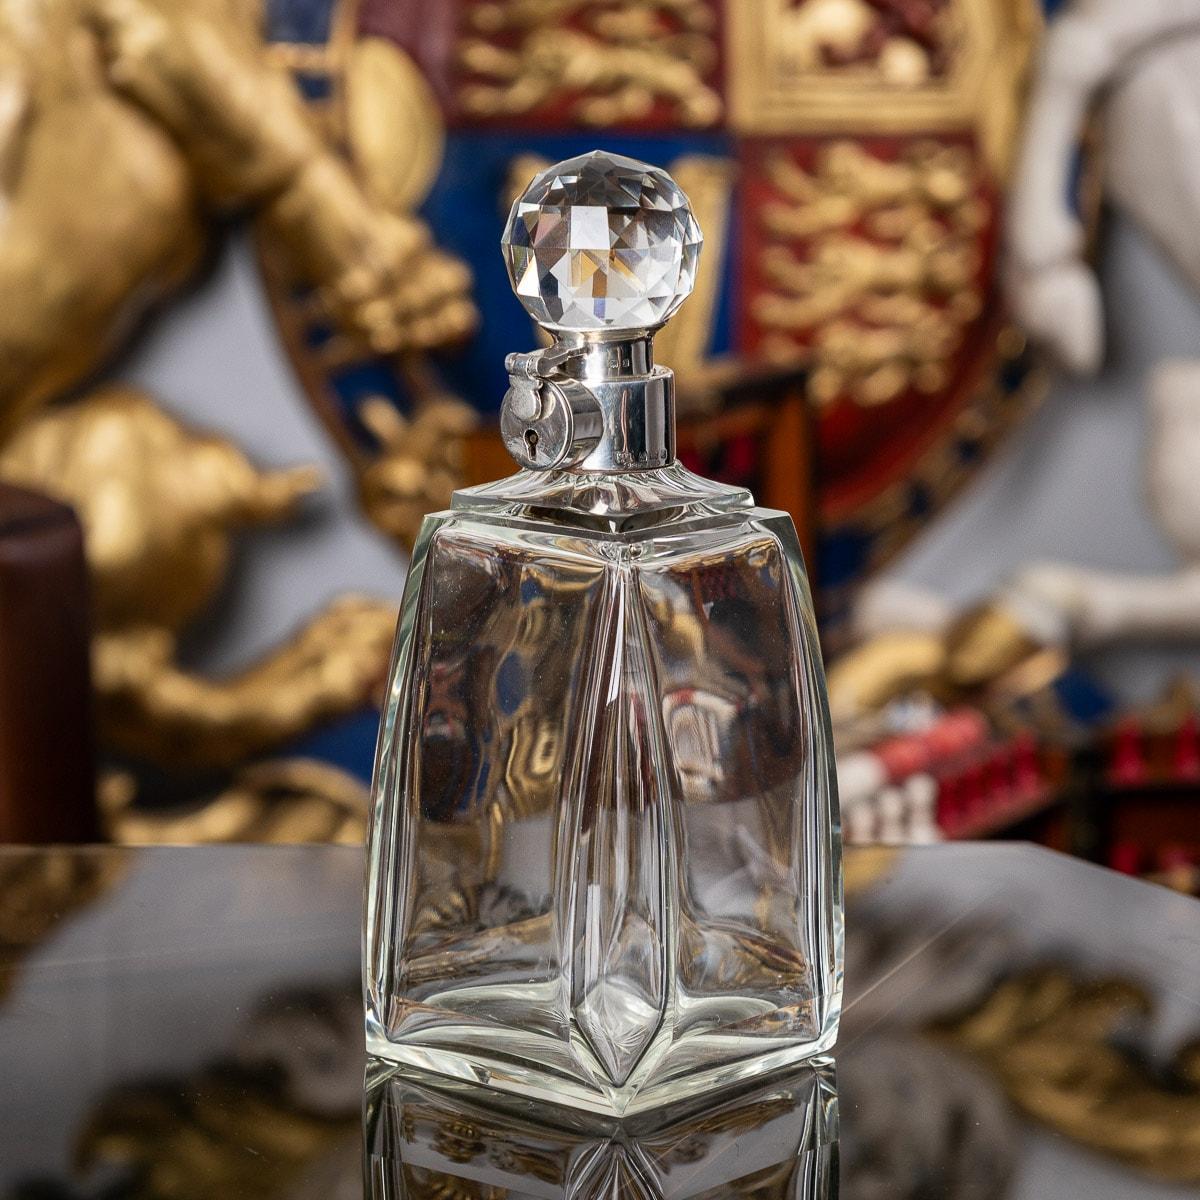 Carafe à alcool anglaise Art déco du 20e siècle en argent et en verre. De grande taille avec un corps en verre et monté avec un élégant bouchon taillé en forme de boule. Il est muni d'un collier argenté et d'un mécanisme de verrouillage avec clé.